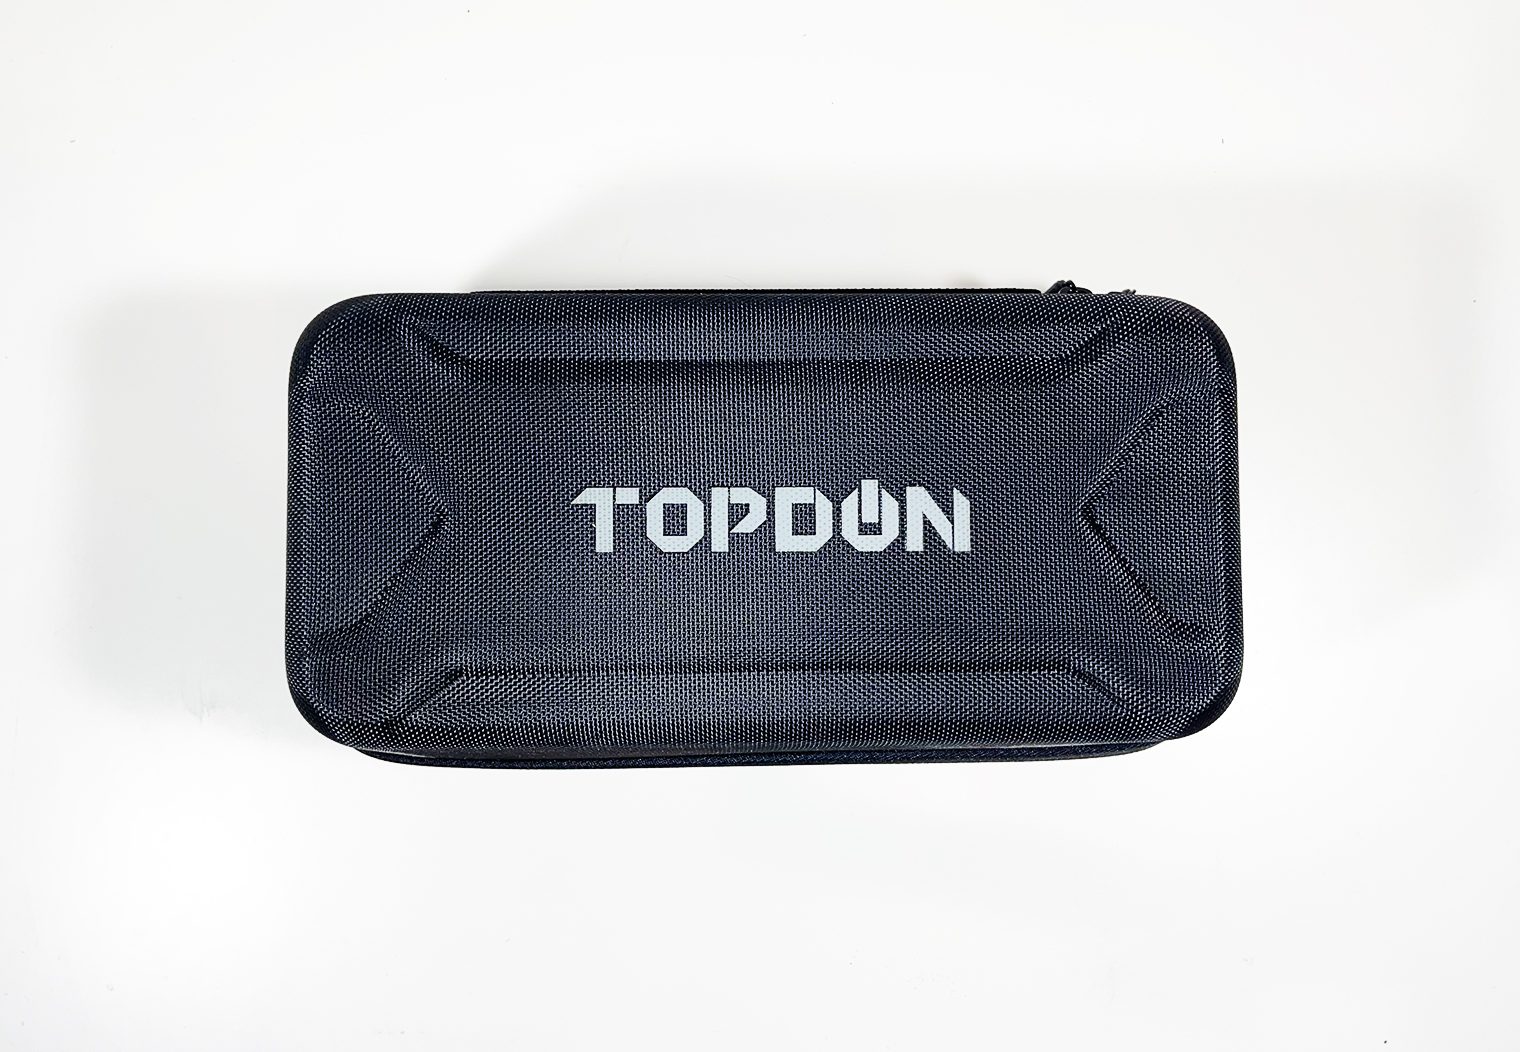 TOPDON JS3000 zip up case